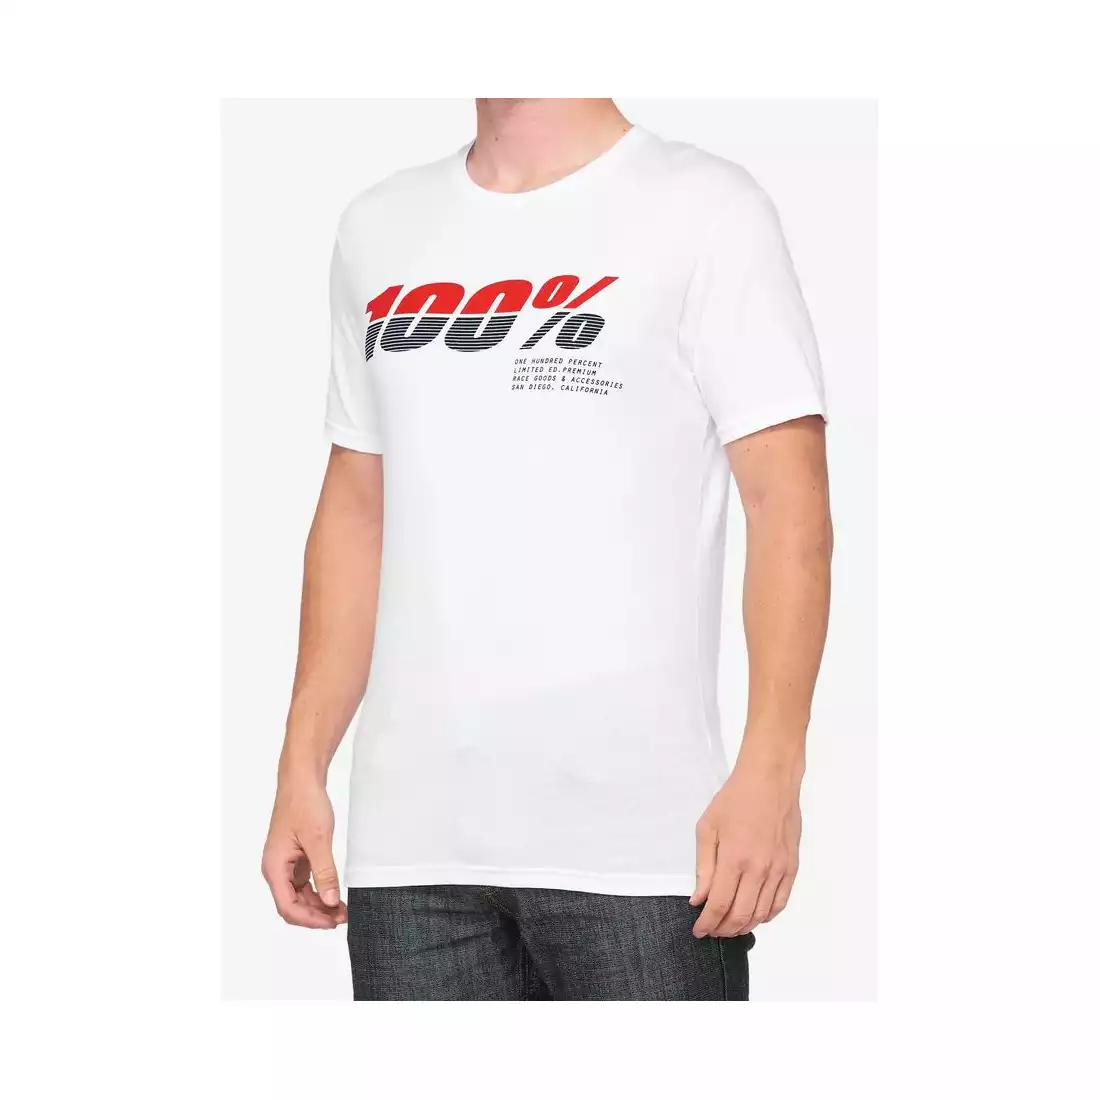 T-shirt 100% BRISTOL krótki rękaw white roz. M (NEW) STO-32095-000-11